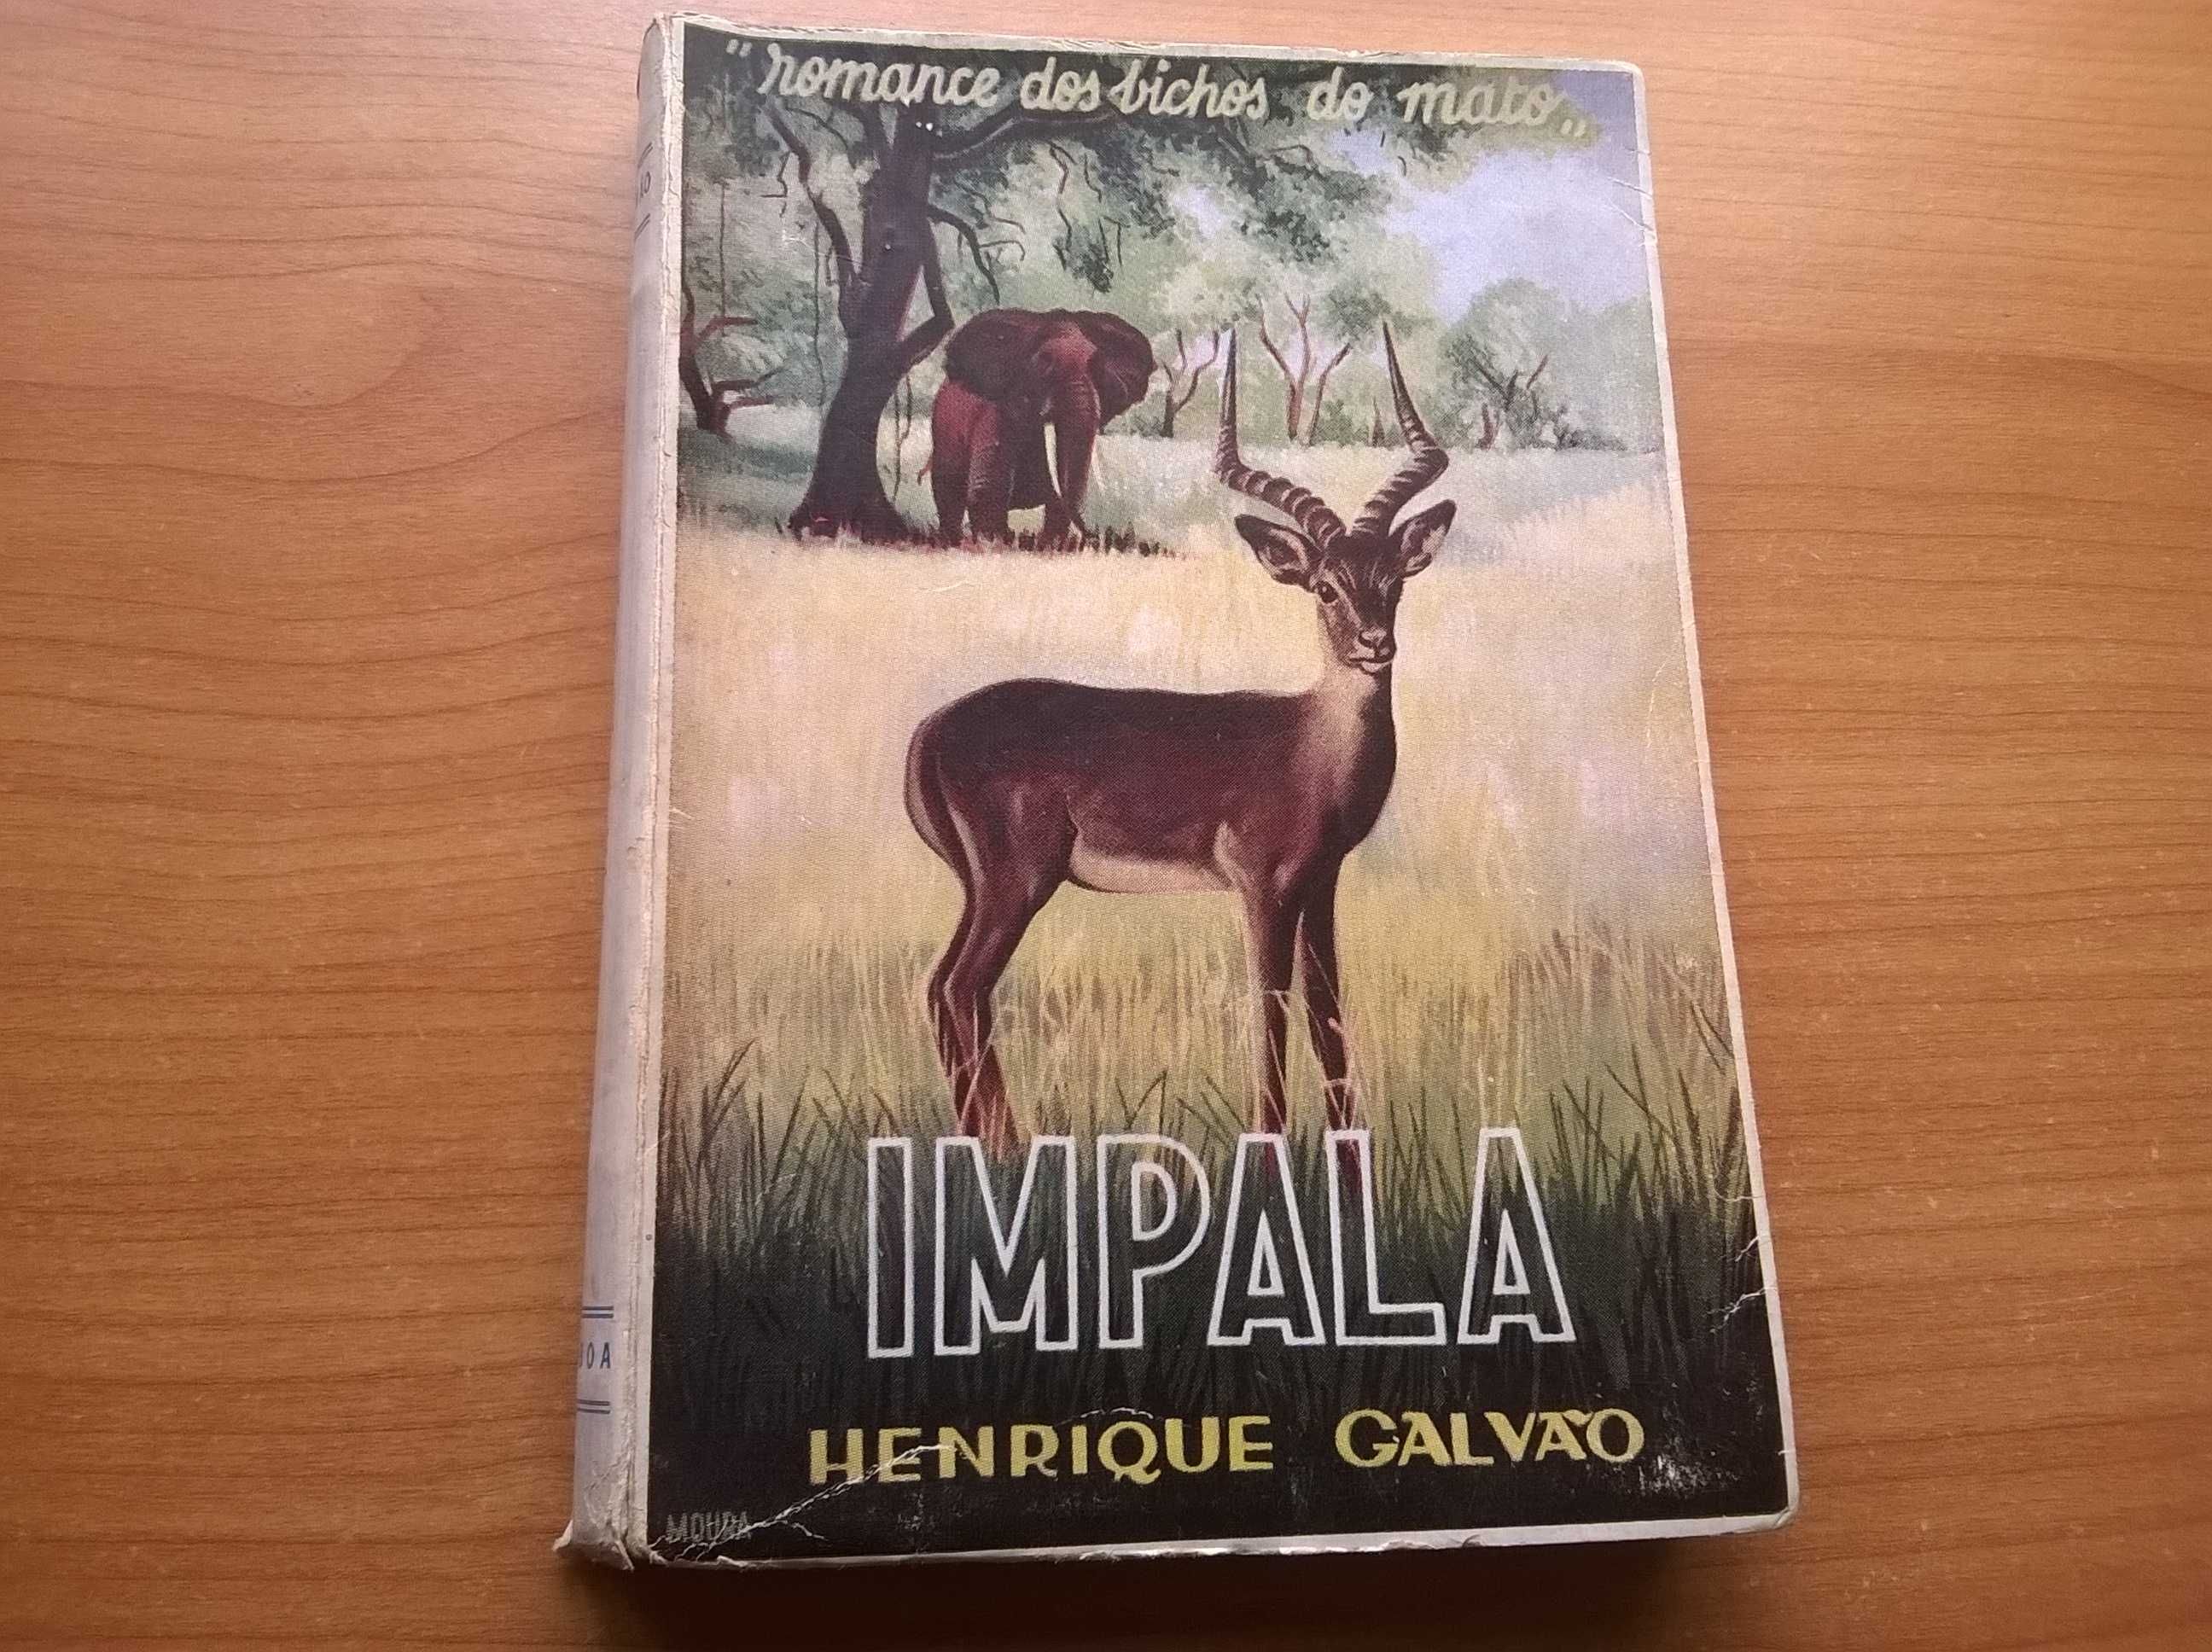 IMPALA, ”Romance dos bichos do Mato” (1.ª ed.) - Henrique Galvão